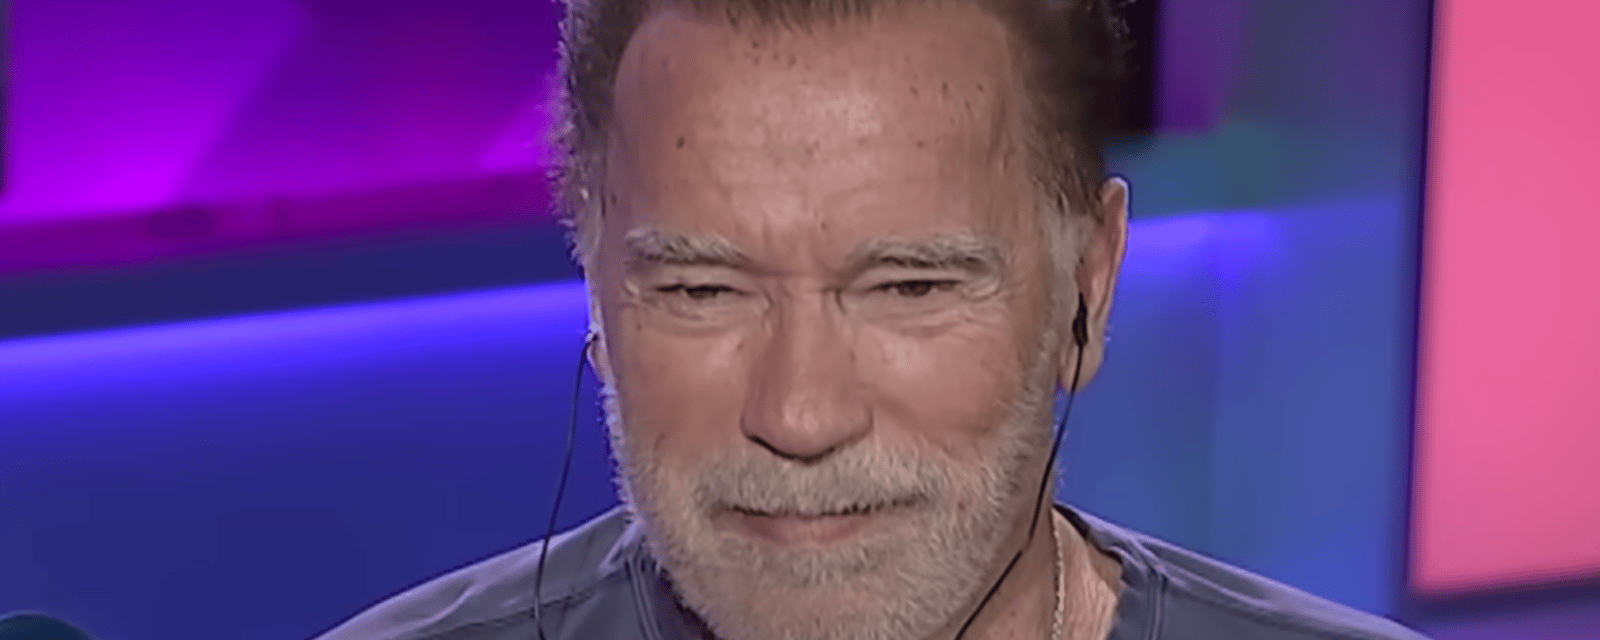 Arnold Schwarzenegger a maintenant de la difficulté à se regarder dans le miroir